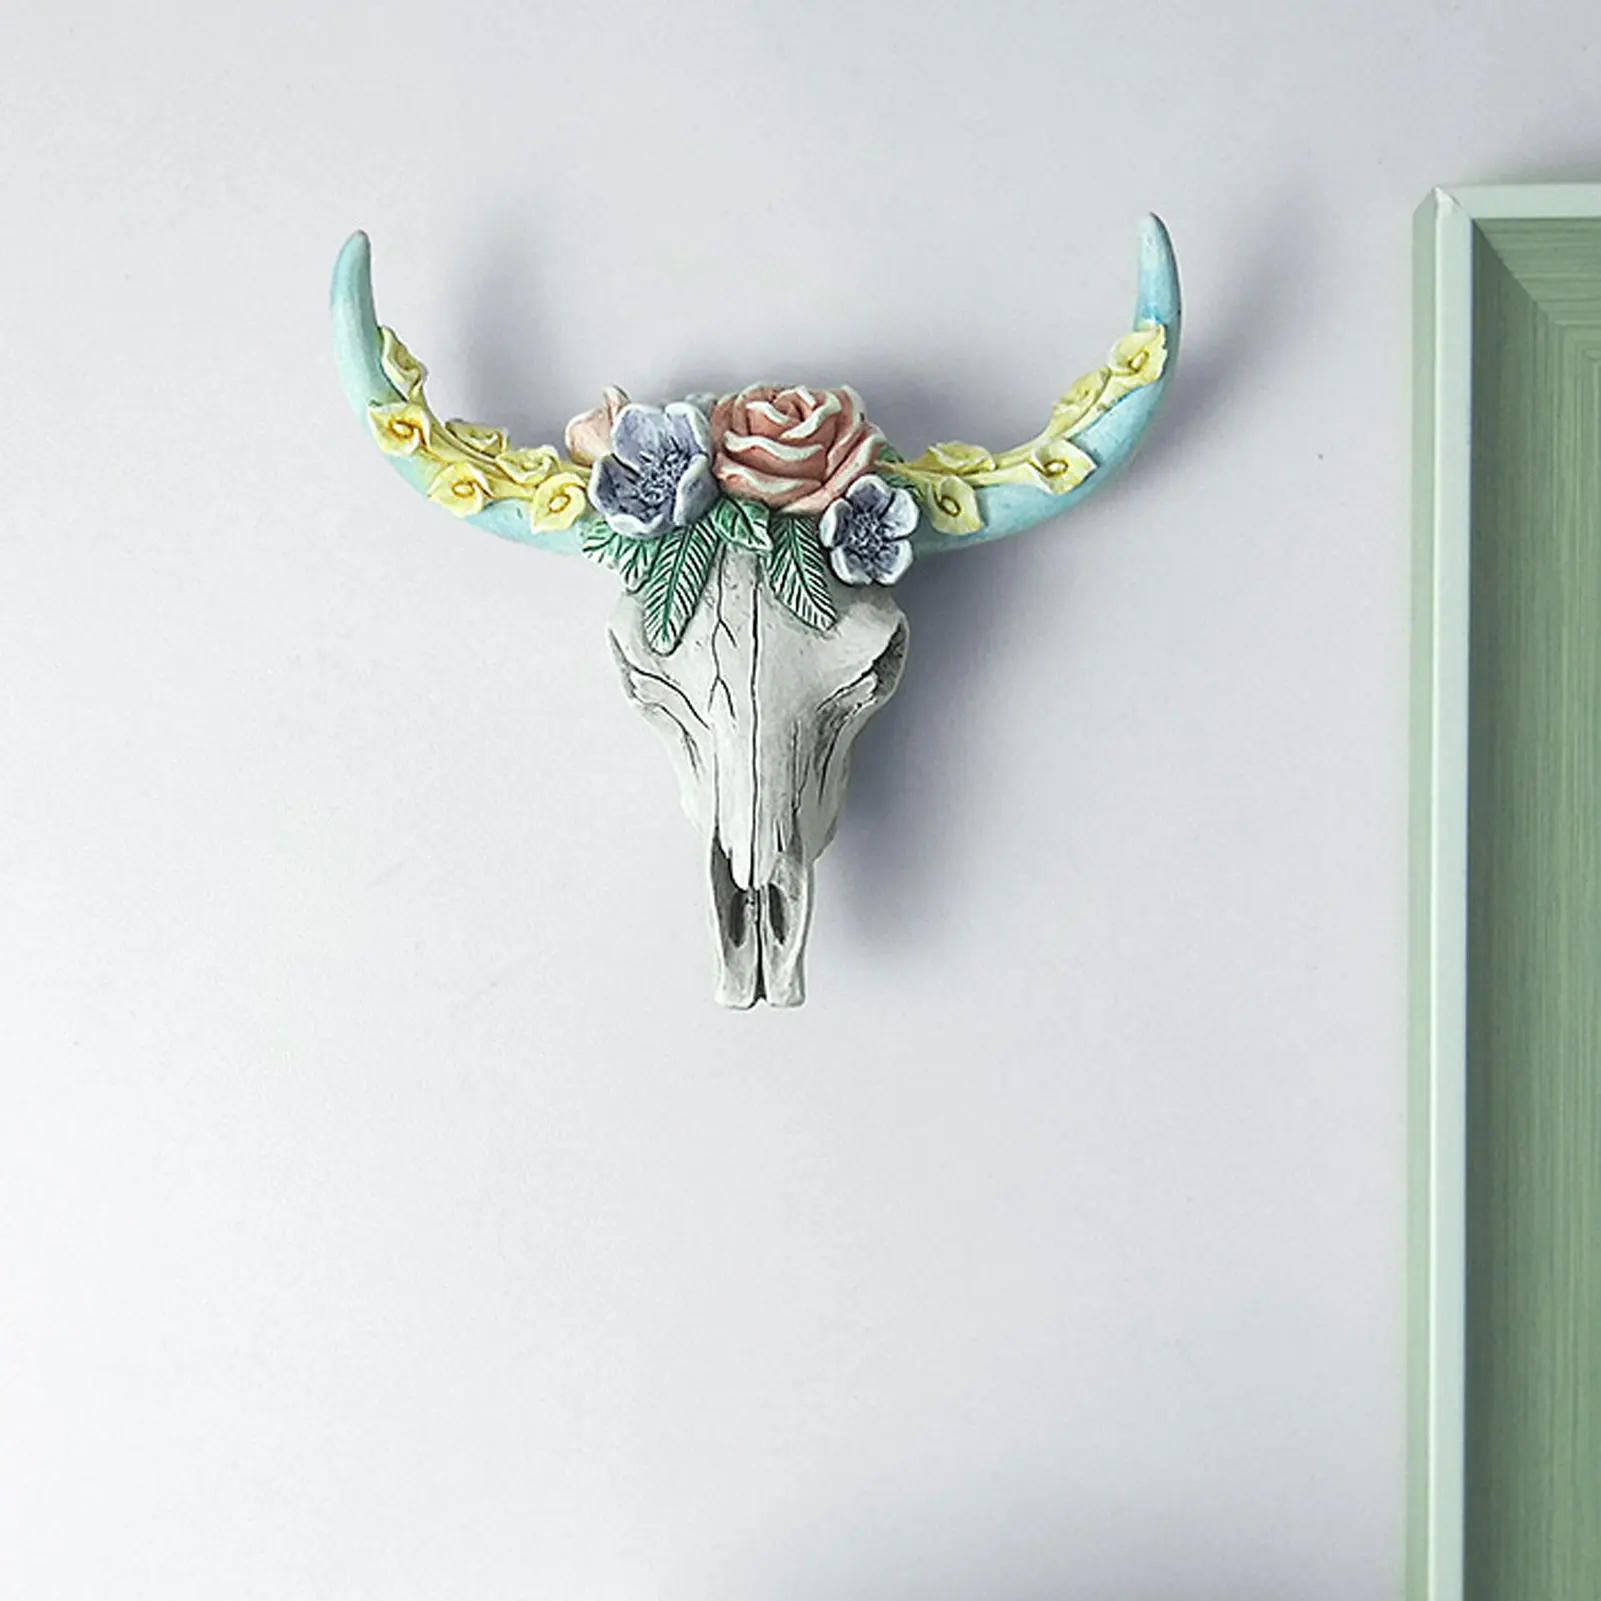 Креативное украшение для стен с сочным черепом коровы, легкое нежное ретро-креативное украшение для подарков друзьям семьи, соседям.